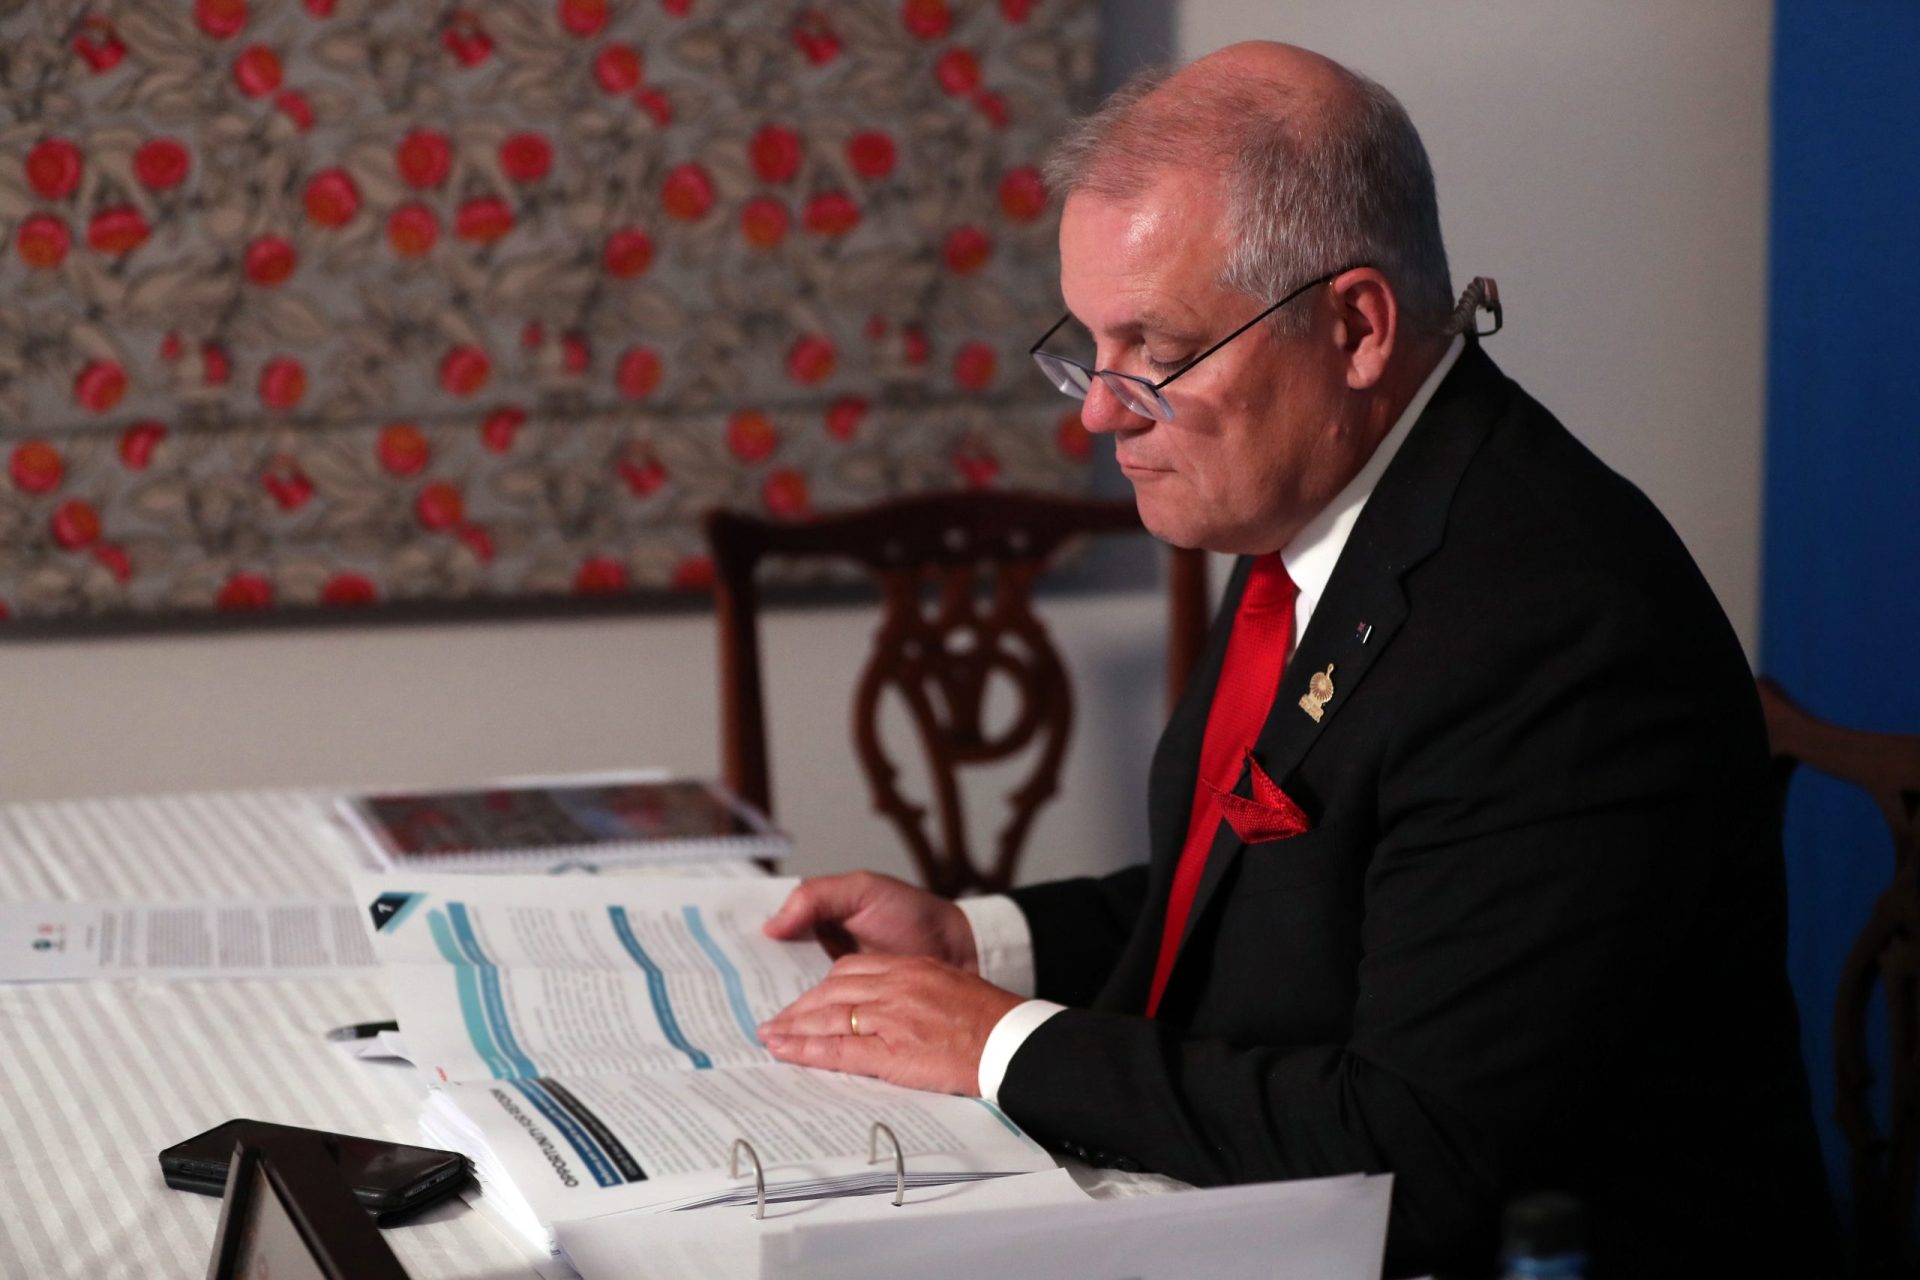 Austrália exige pedido de desculpa à China após publicação de imagem “repugnante”